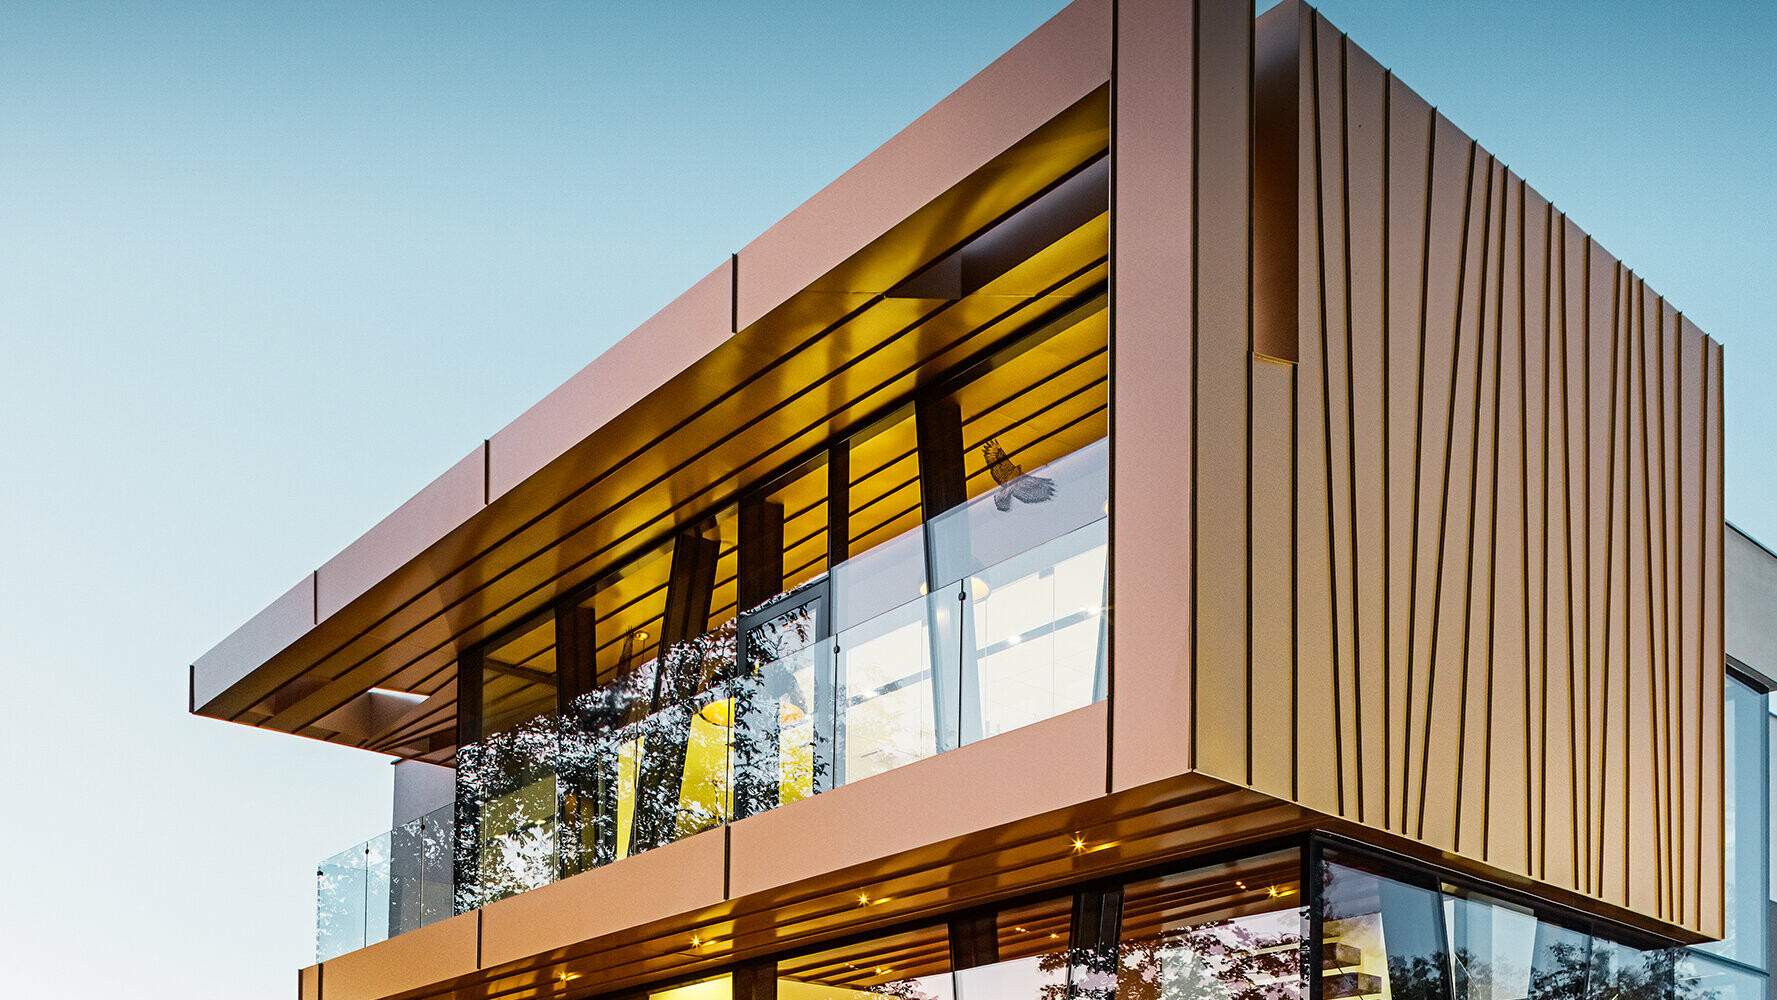 Cantina vinicola Le scanalature irregolari della facciata in alluminio nella tonalità dorata mayagold conferiscono all’edificio un aspetto davvero particolare.